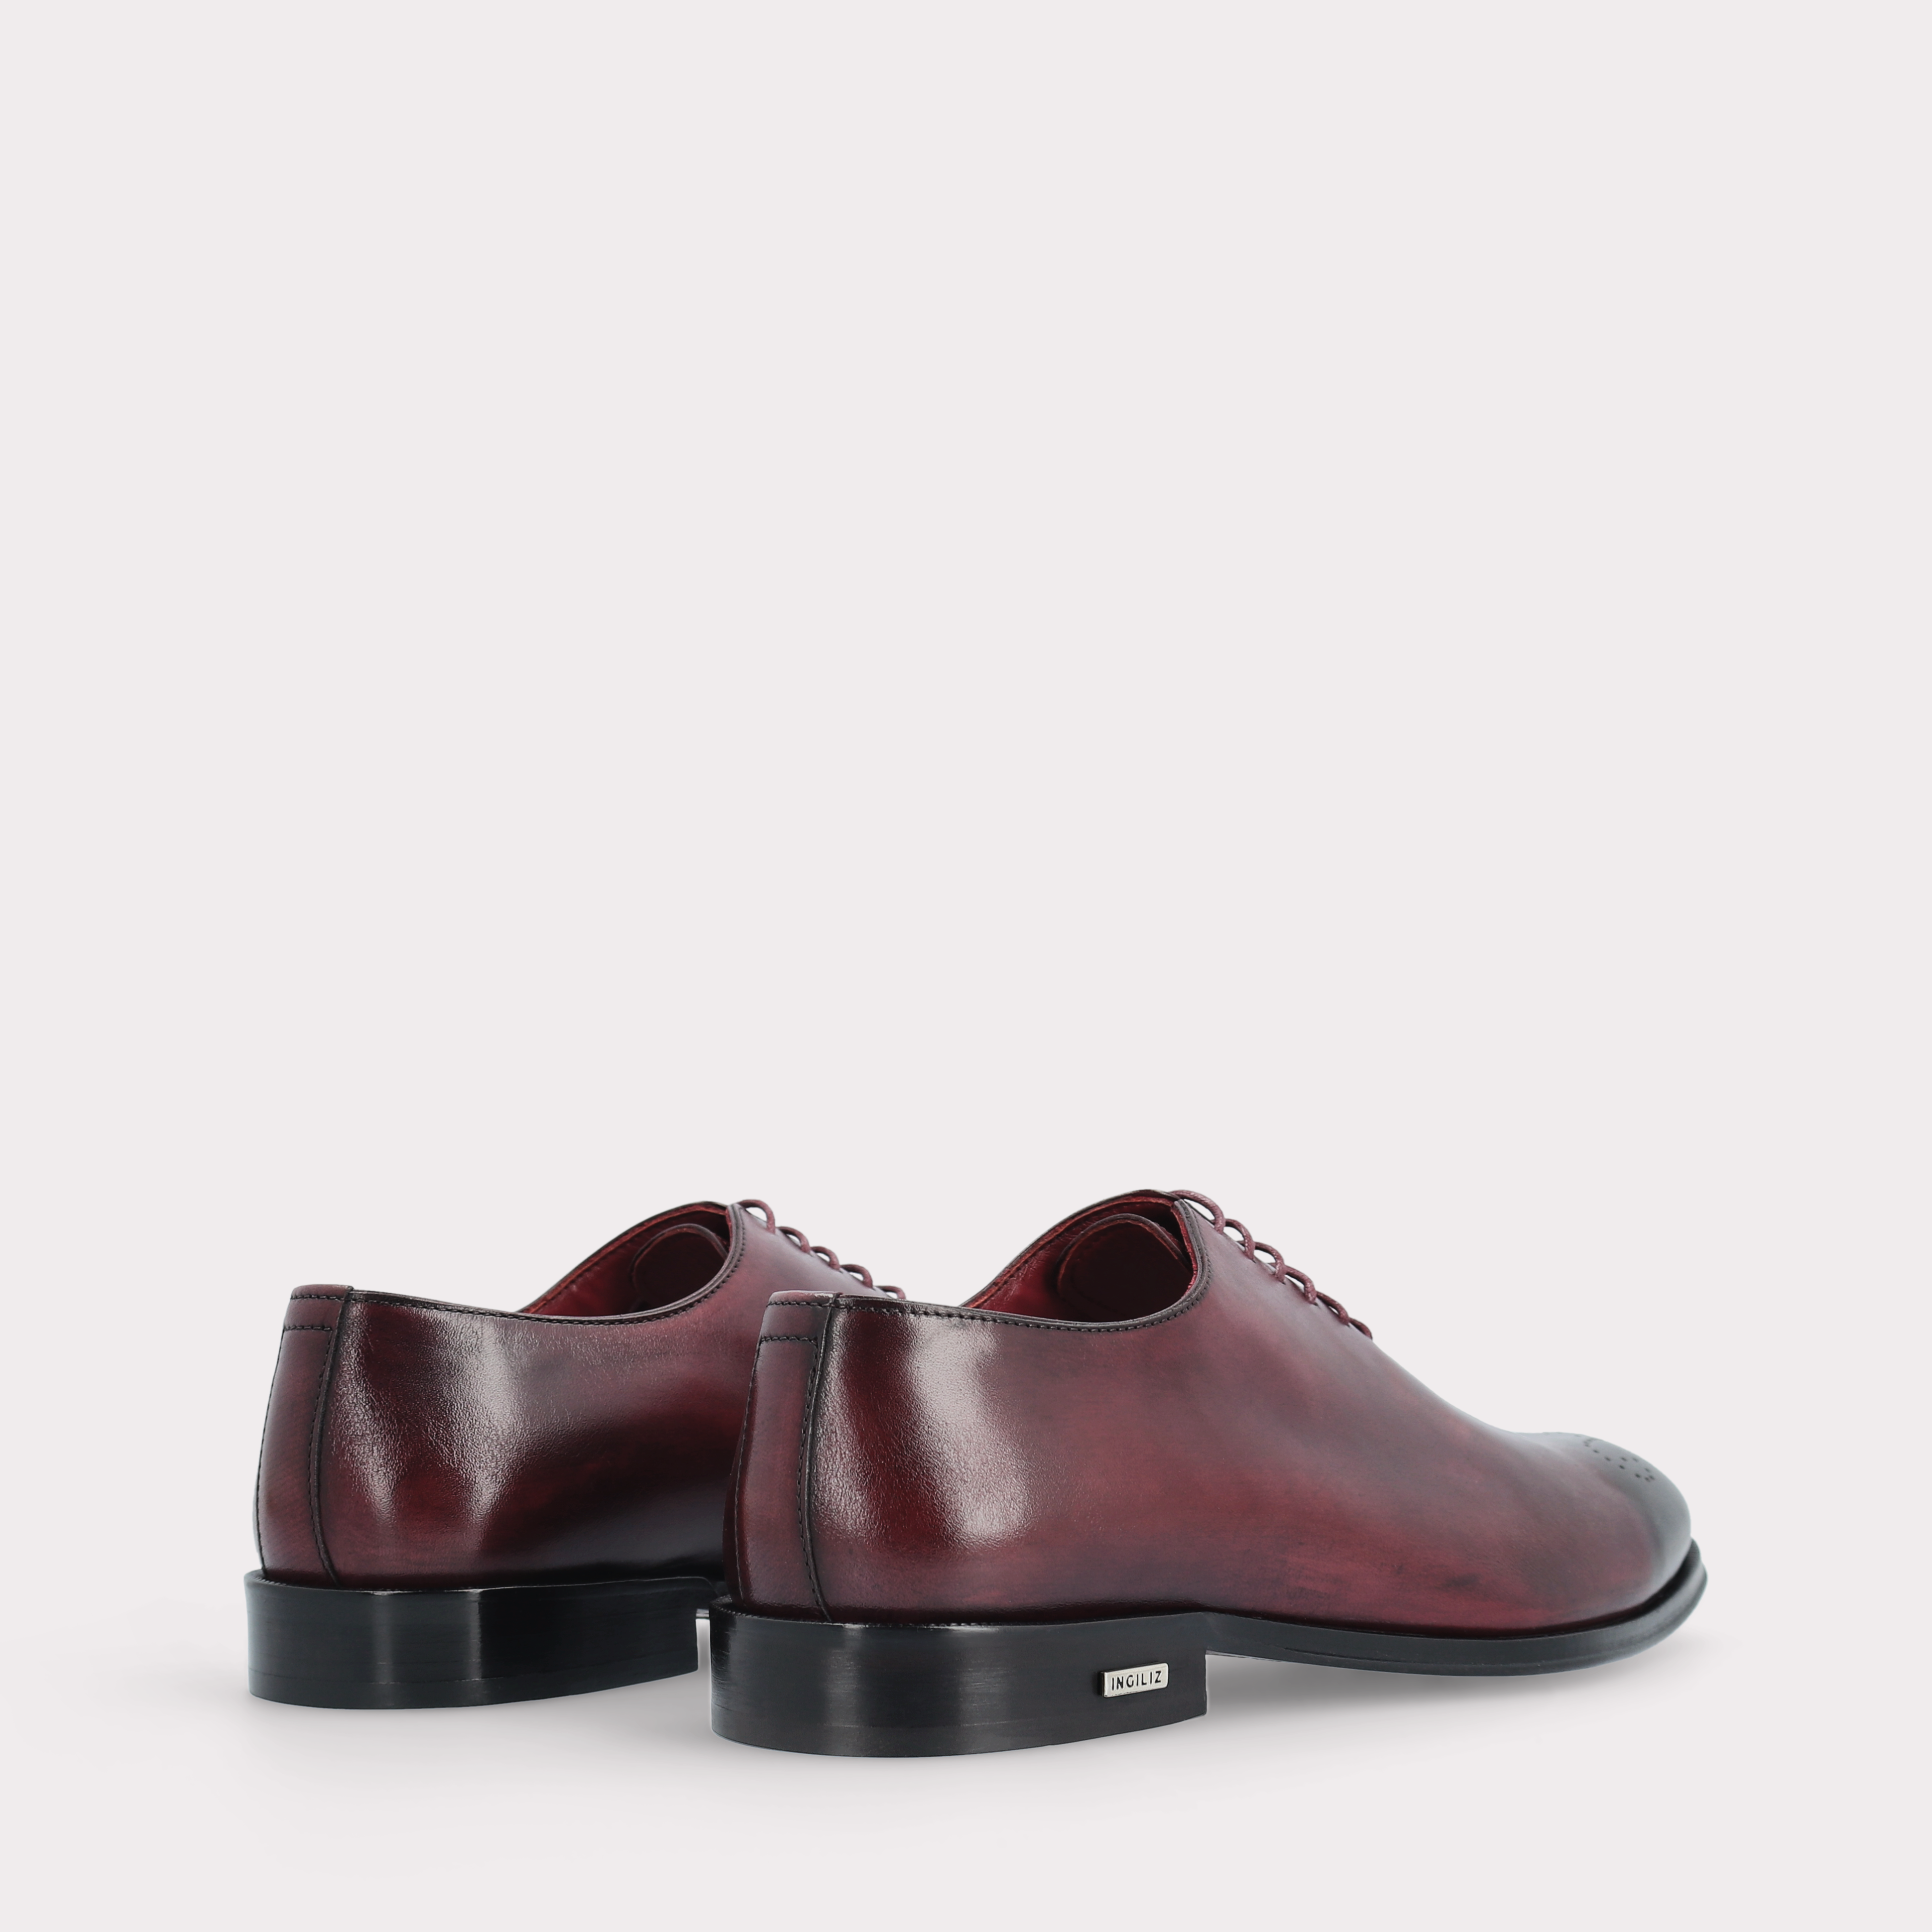 PRATO 01 bordeaux leather oxford shoes